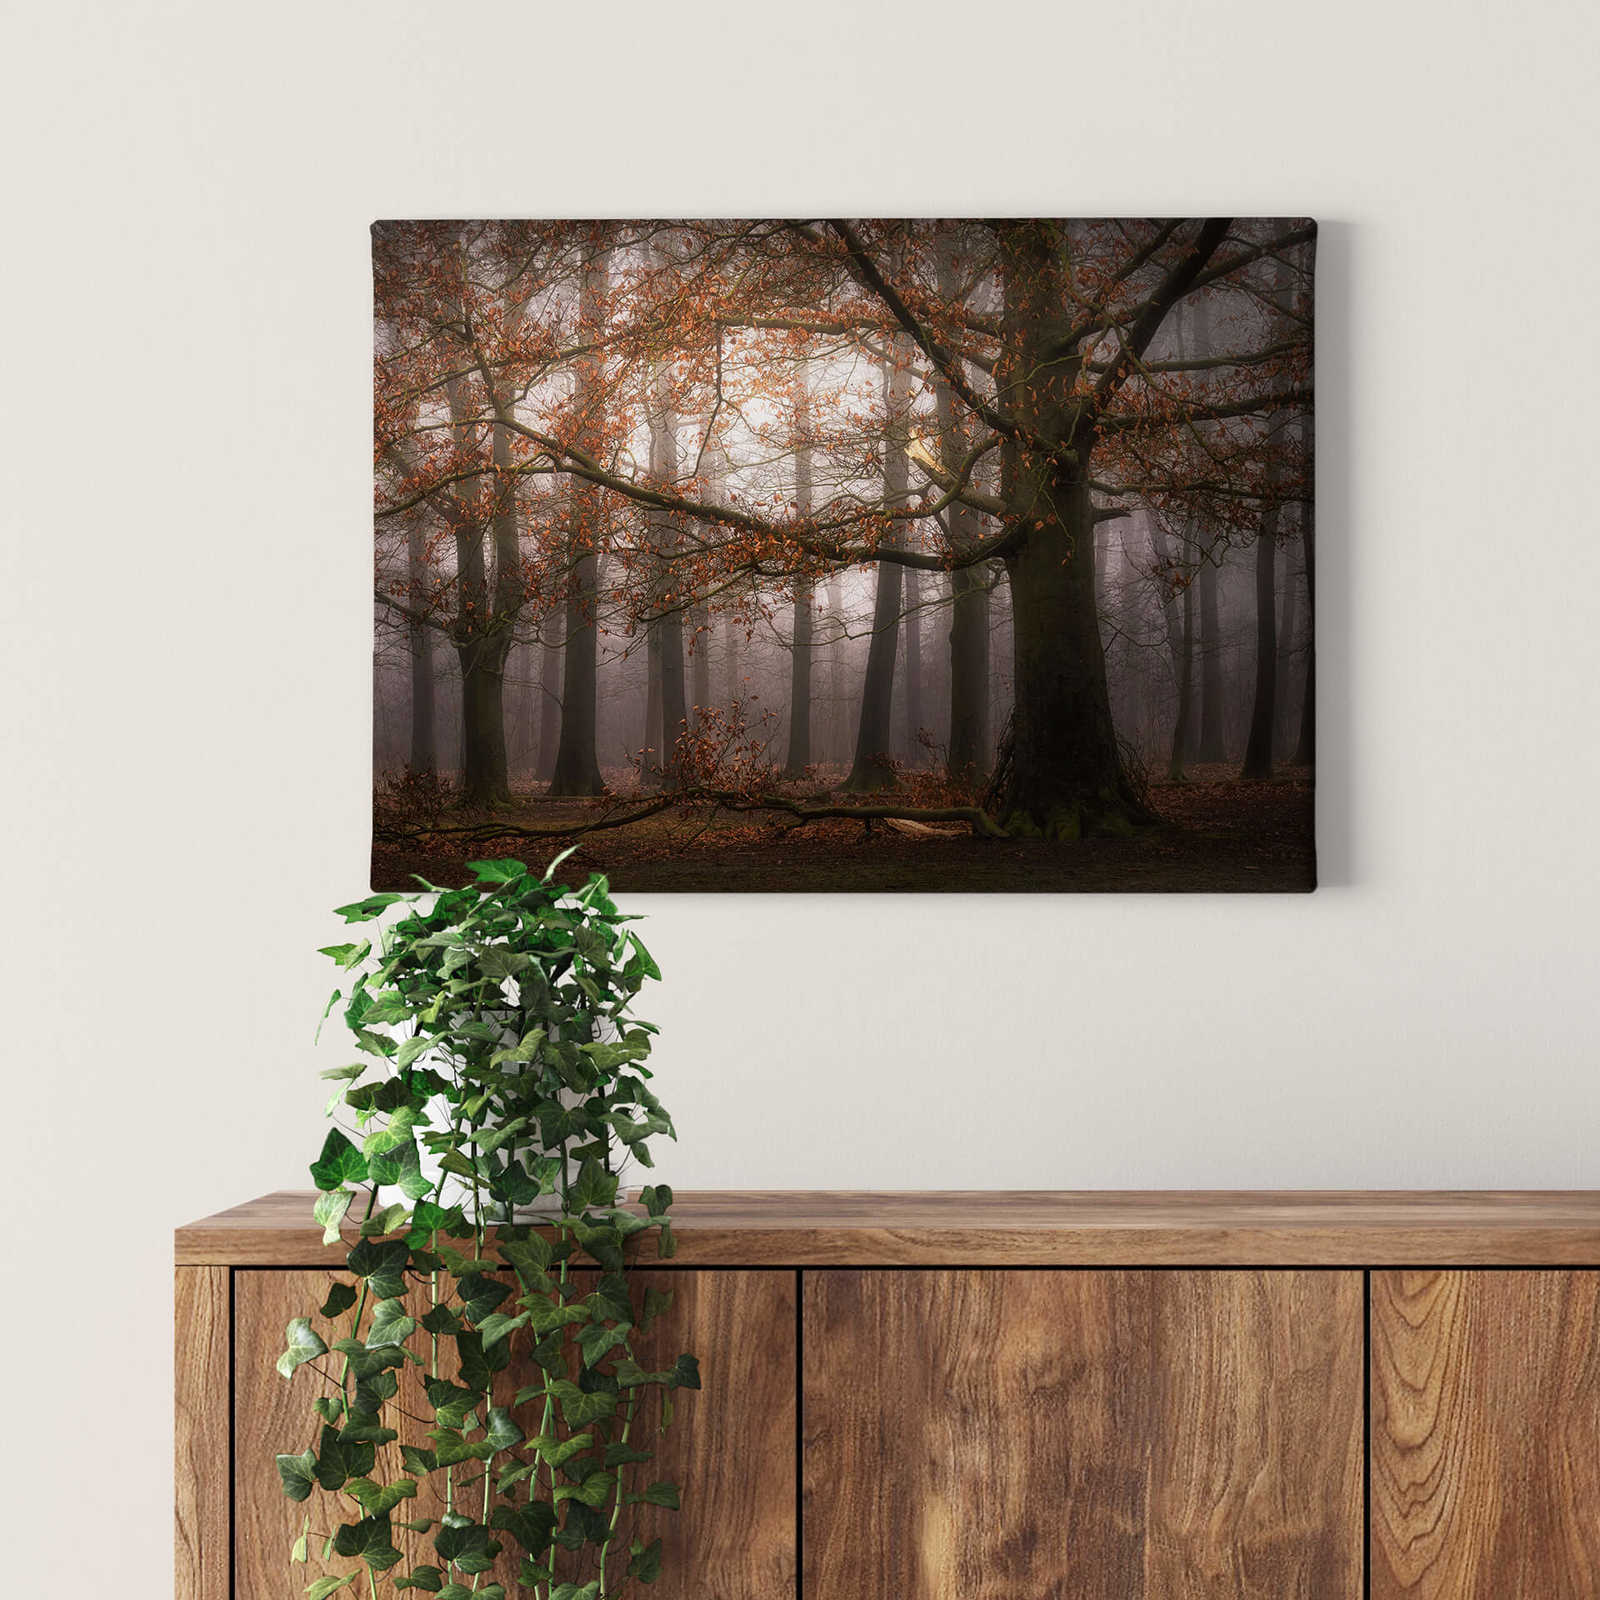             Tableau sur toile avec forêt de feuilles en novembre de Digemans - 0,70 m x 0,50 m
        